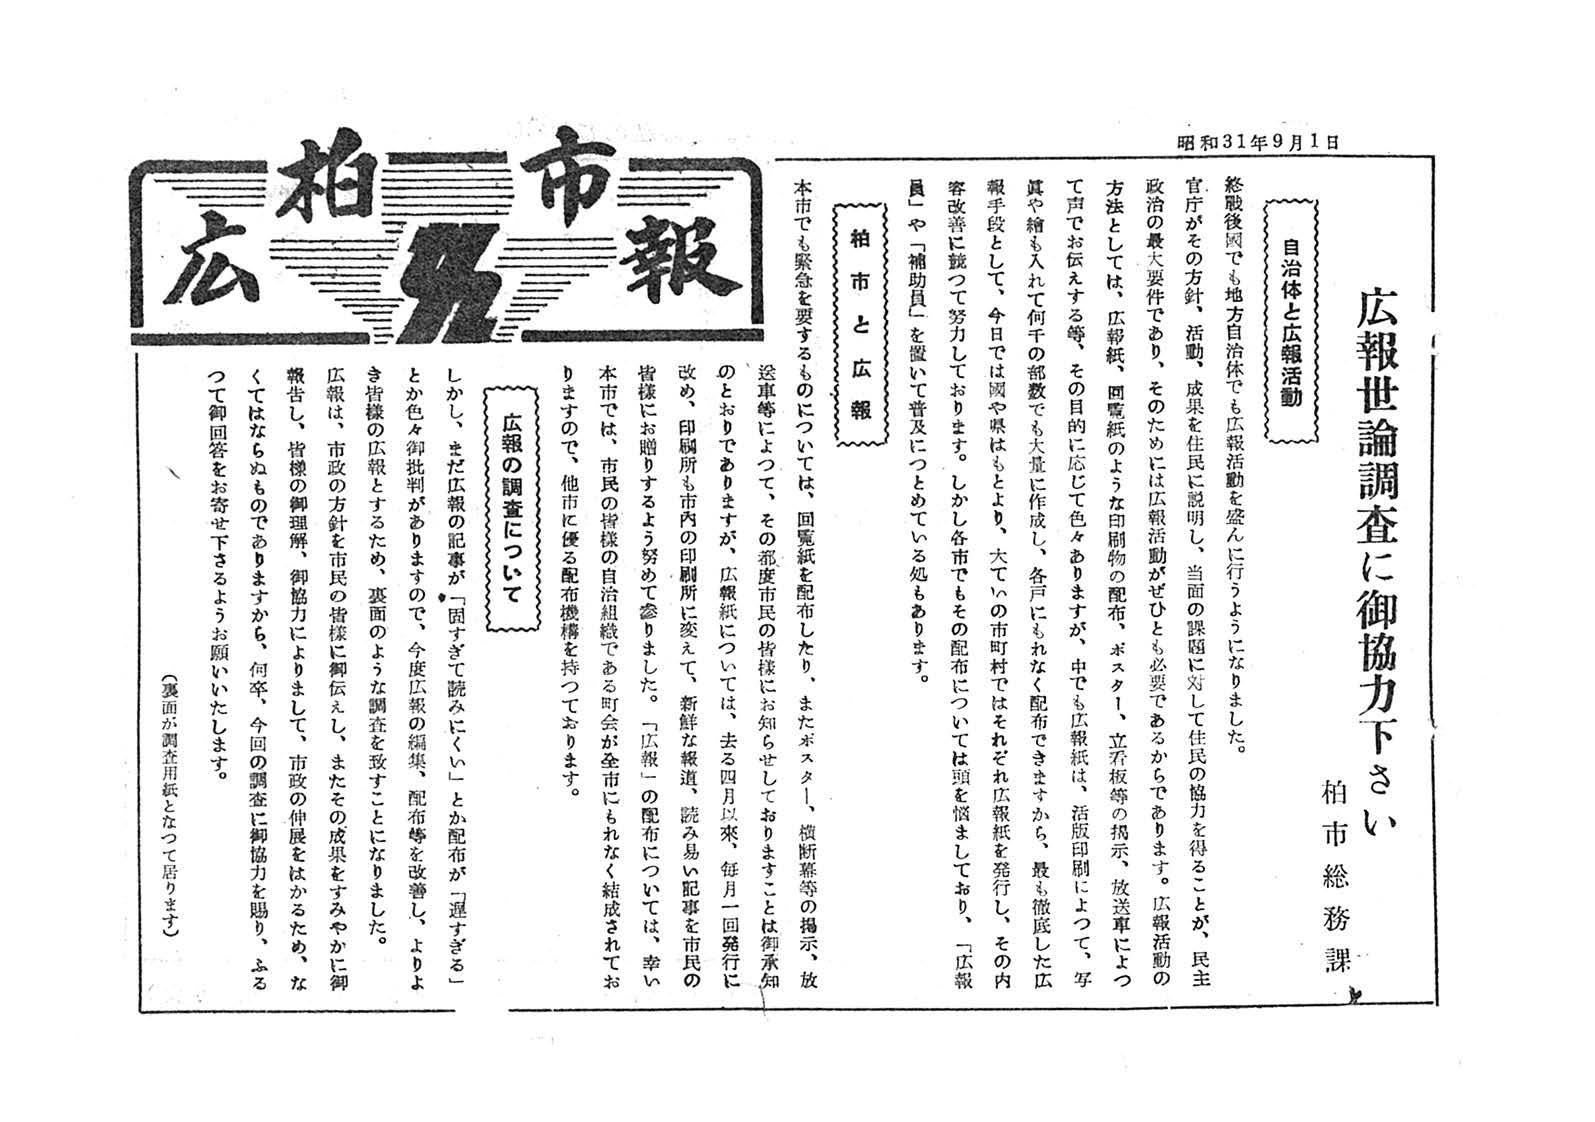 広報かしわ　昭和31年9月1日発行　広報世論調査